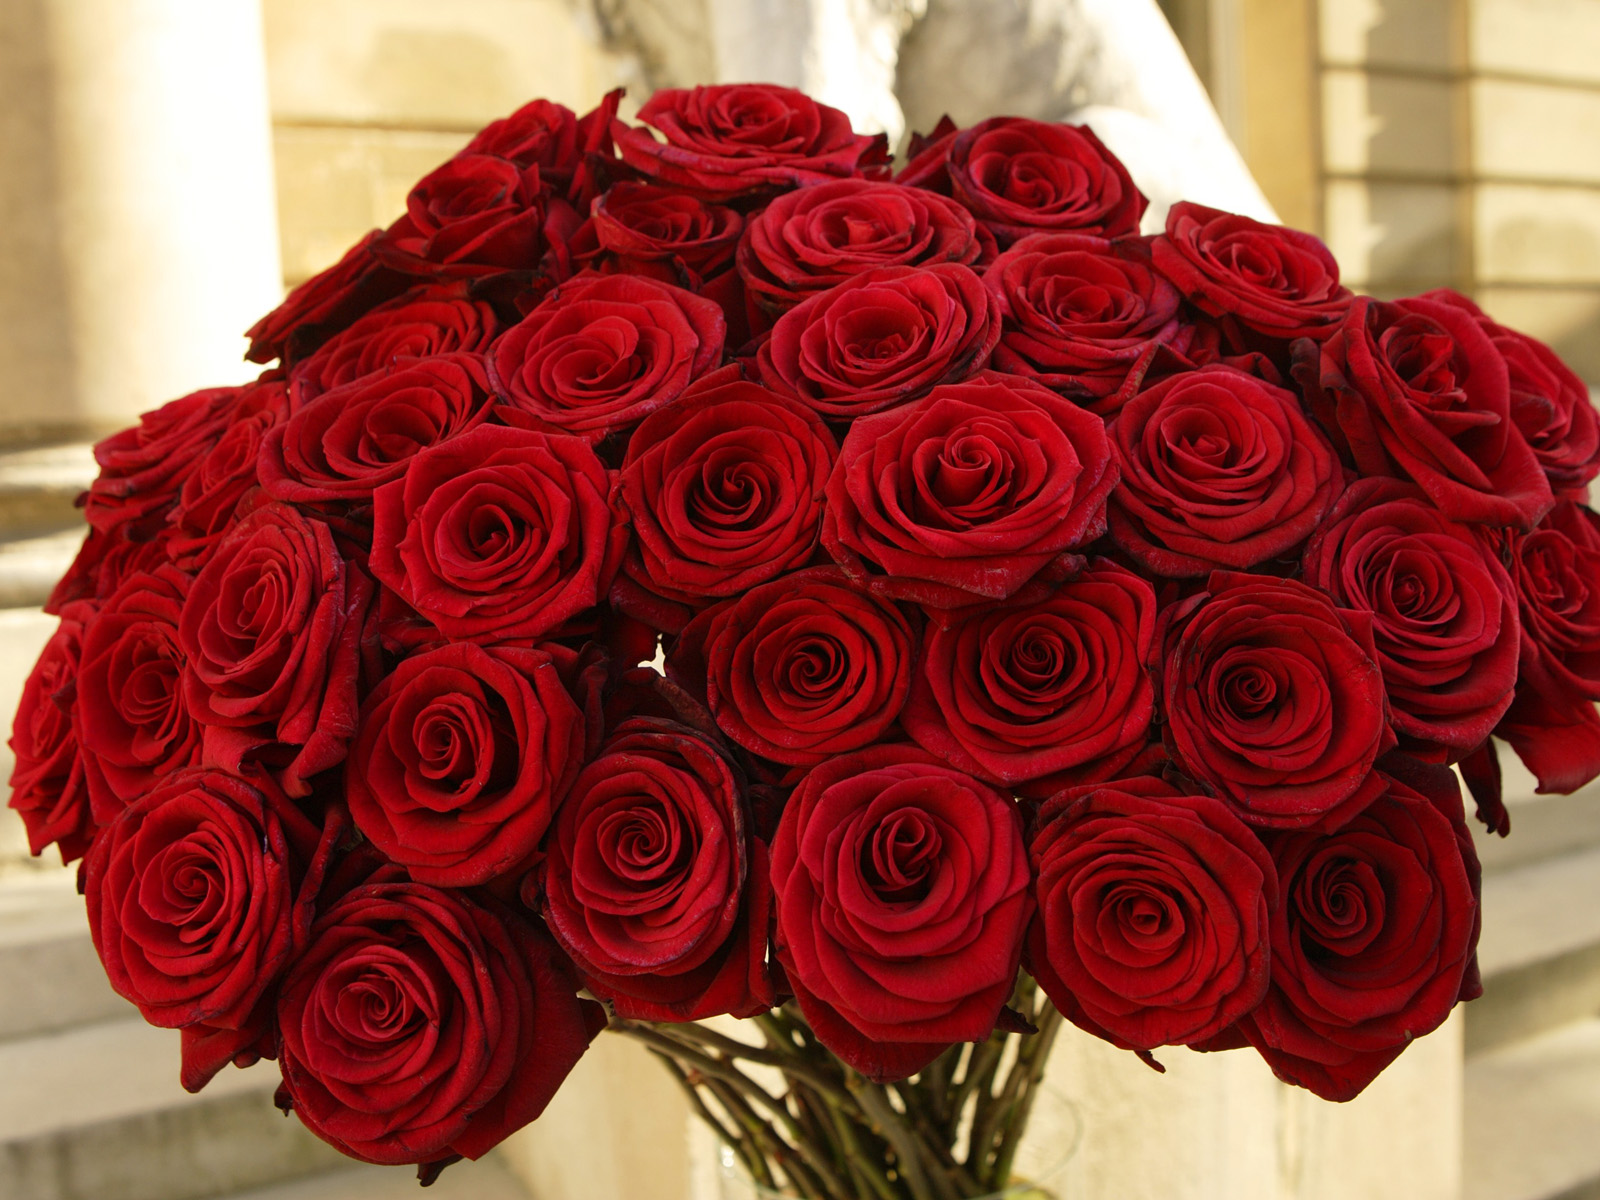 اروع باقات الورد للتعبير عن مشاعرك لحبيتك ارسل بوكية من الزهور